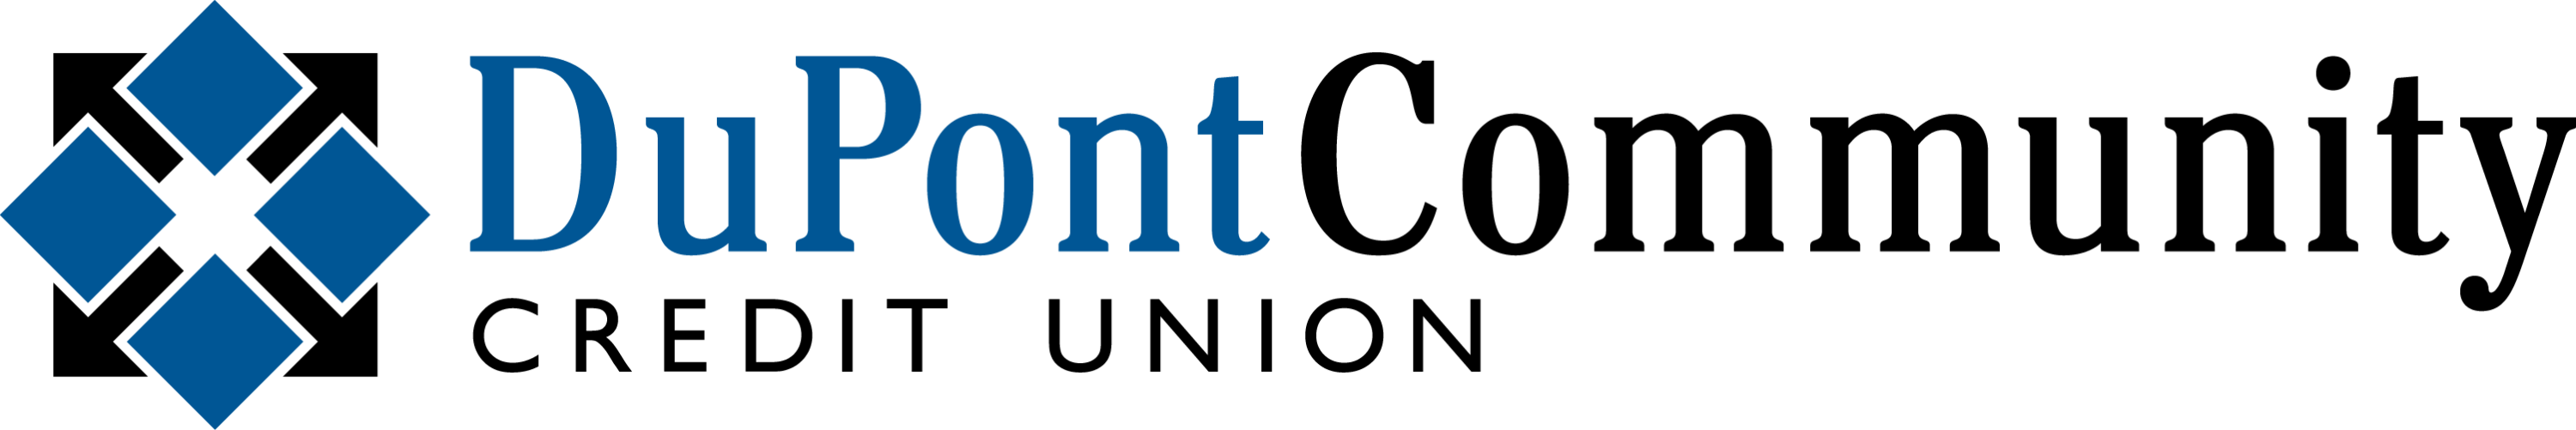 Dupont Commuity Credit Union